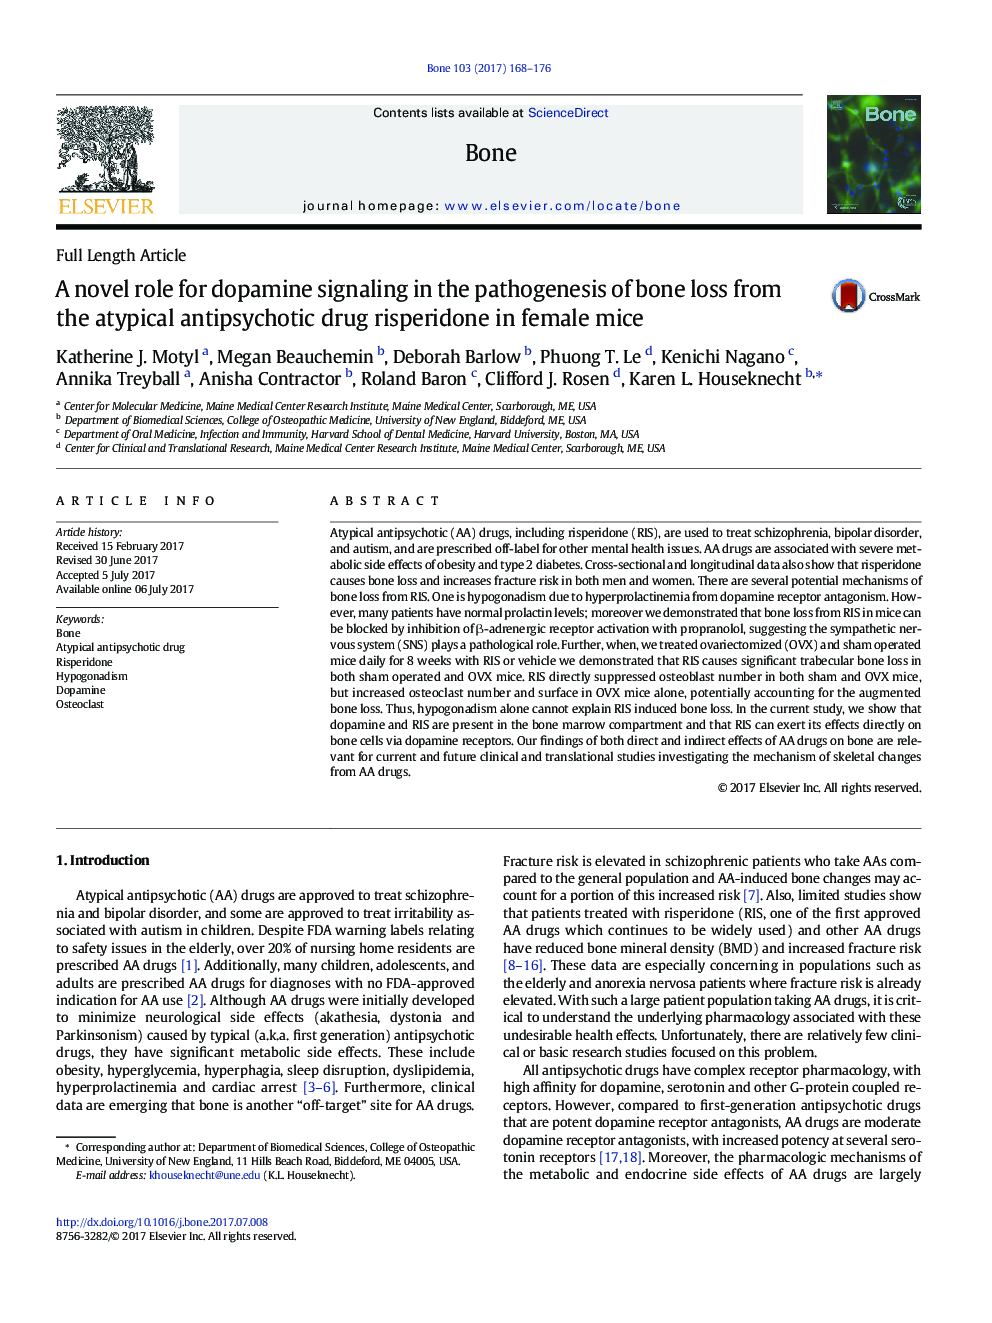 نقش جدیدی برای سیگنالینگ دوپامین در پاتوژنز از دست دادن استخوان از داروهای ضد سایکوتیک آتیپیک ریسپریدون در موش های ماده 